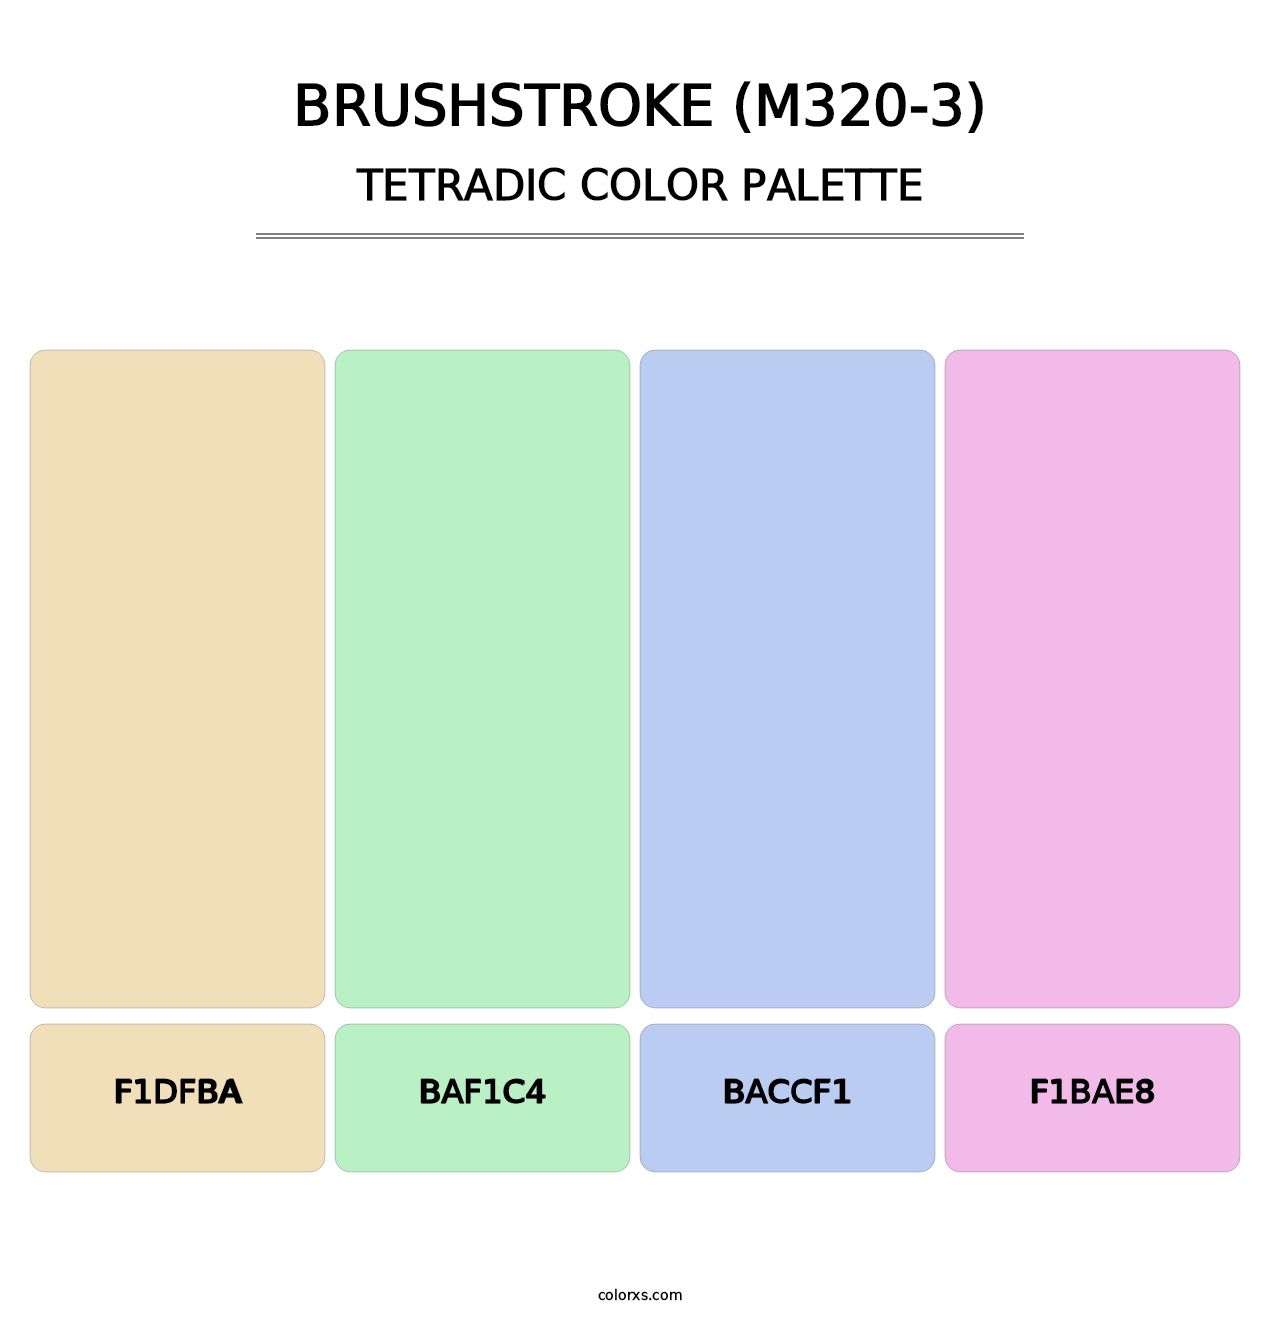 Brushstroke (M320-3) - Tetradic Color Palette